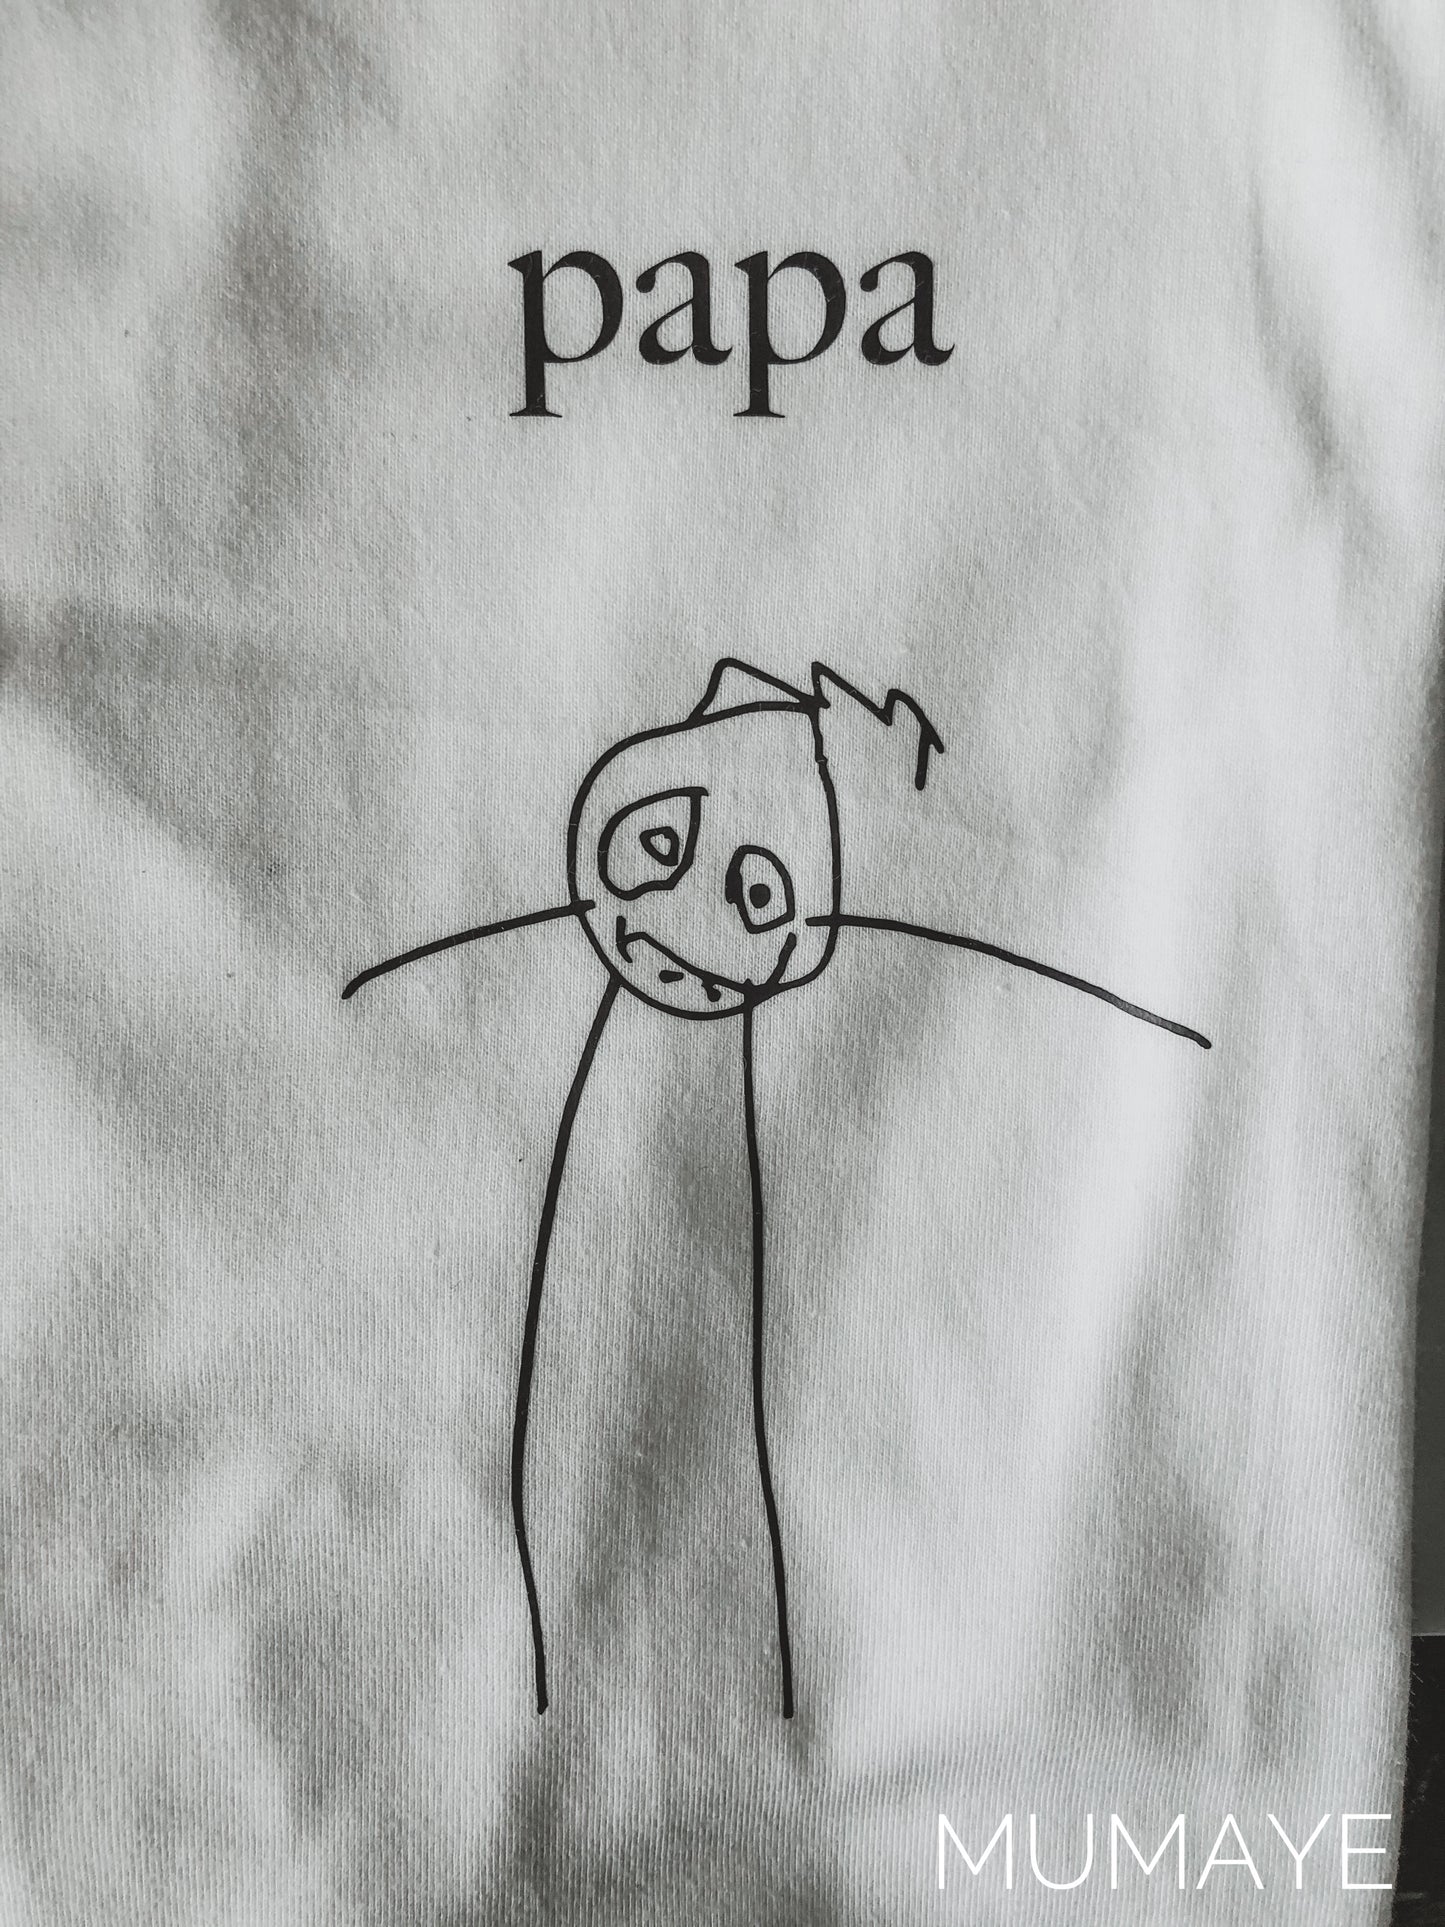 T-shirt tekening - Volwassene